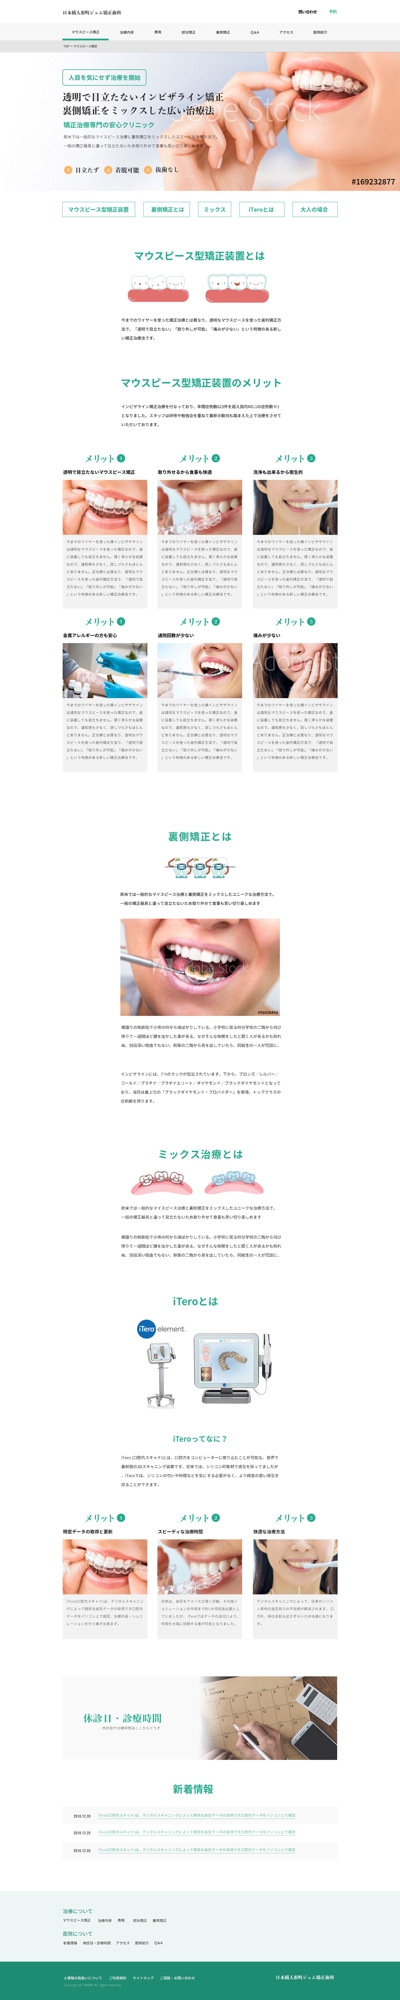 歯科医のWebサイトデザイン